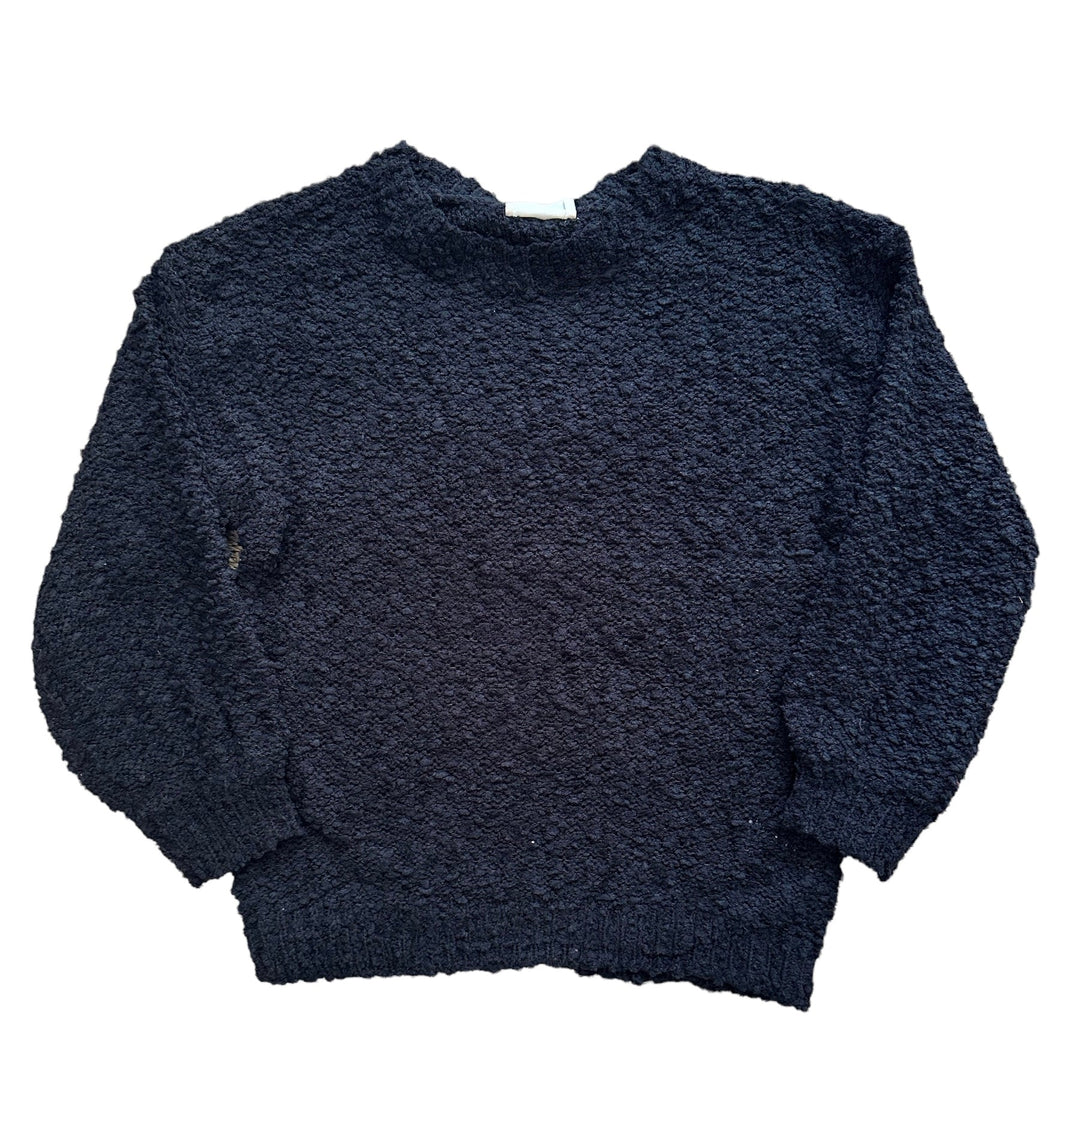 Black Popcorn Sweater - jernijacks